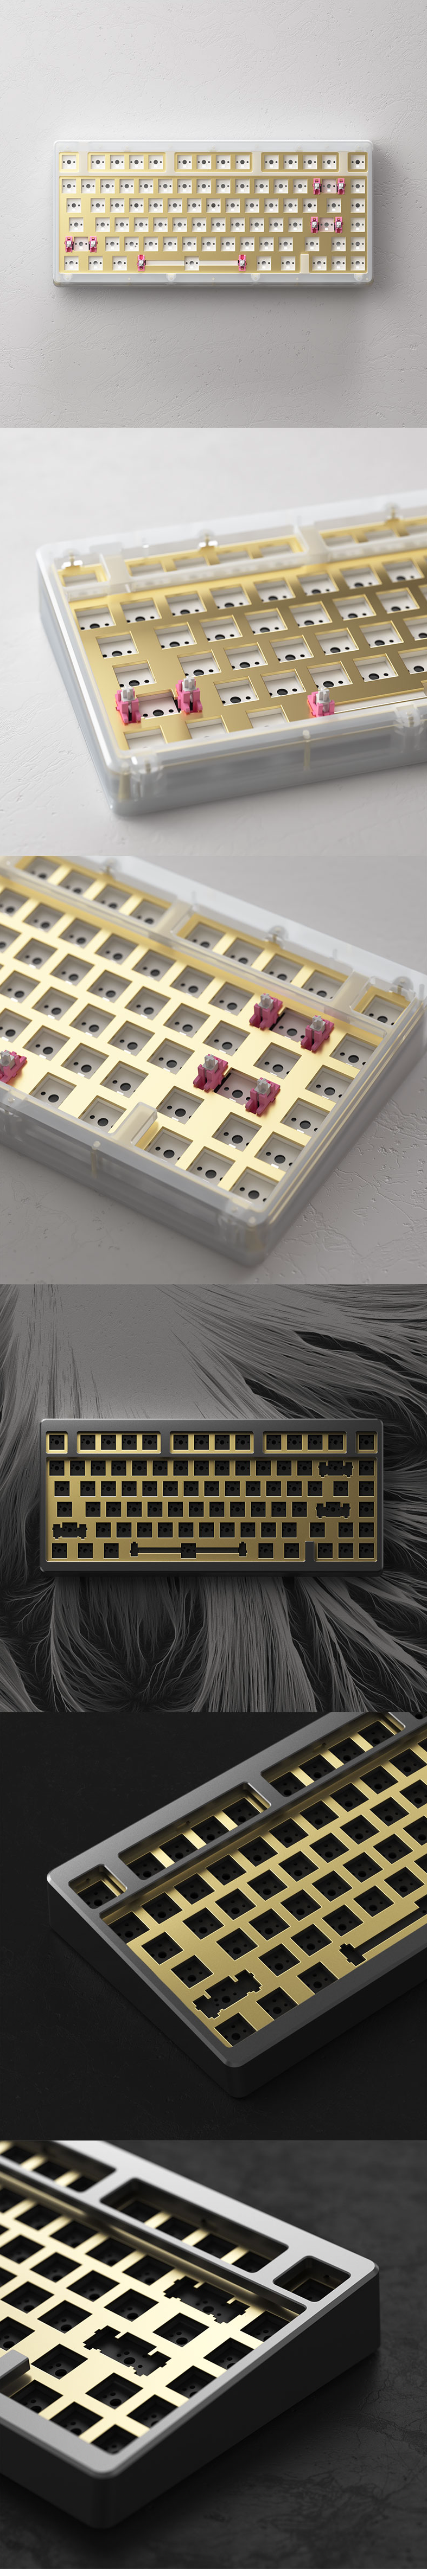 Akko ACR TOP 75 RGB Keyboard Kit